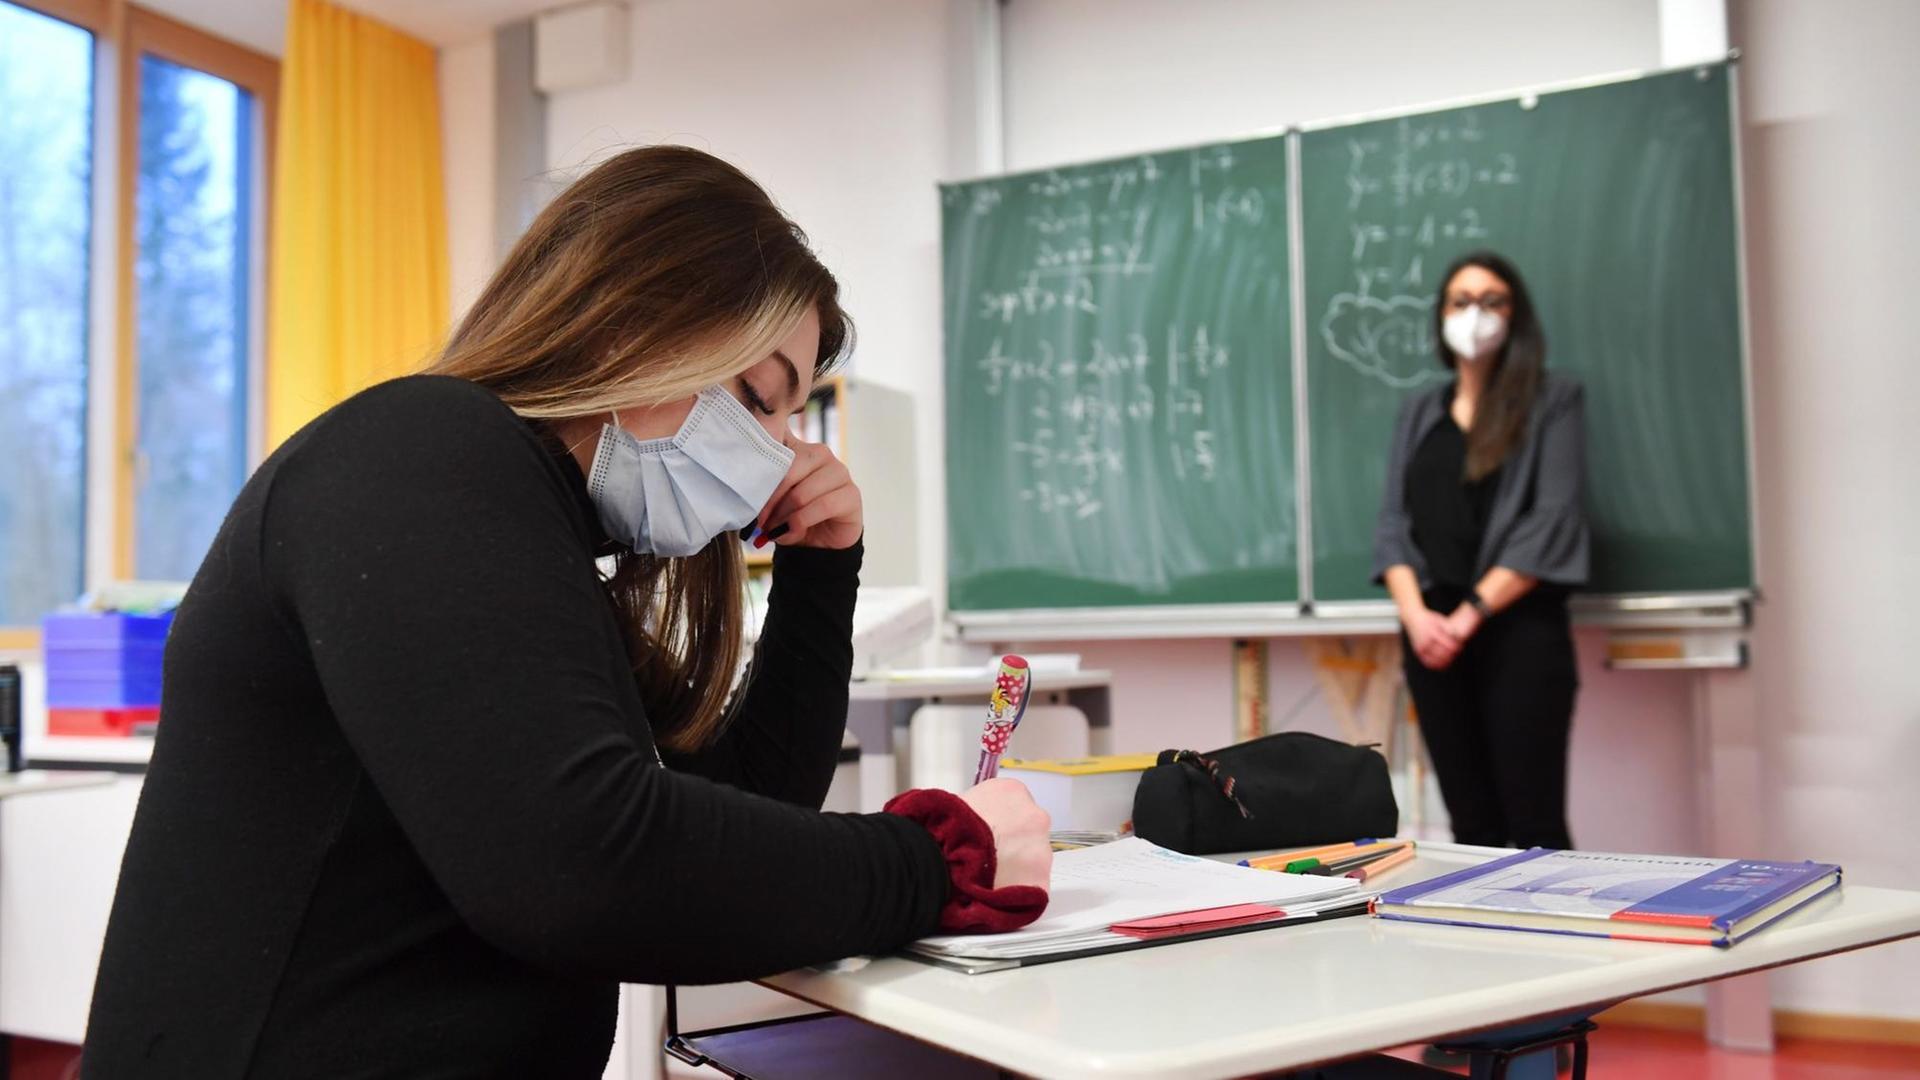 Schulunterricht in Zeiten der Coronavirus Pandemie: Lehrerin steht an einer Tafel, Schülerin arbeitet konzentriert.